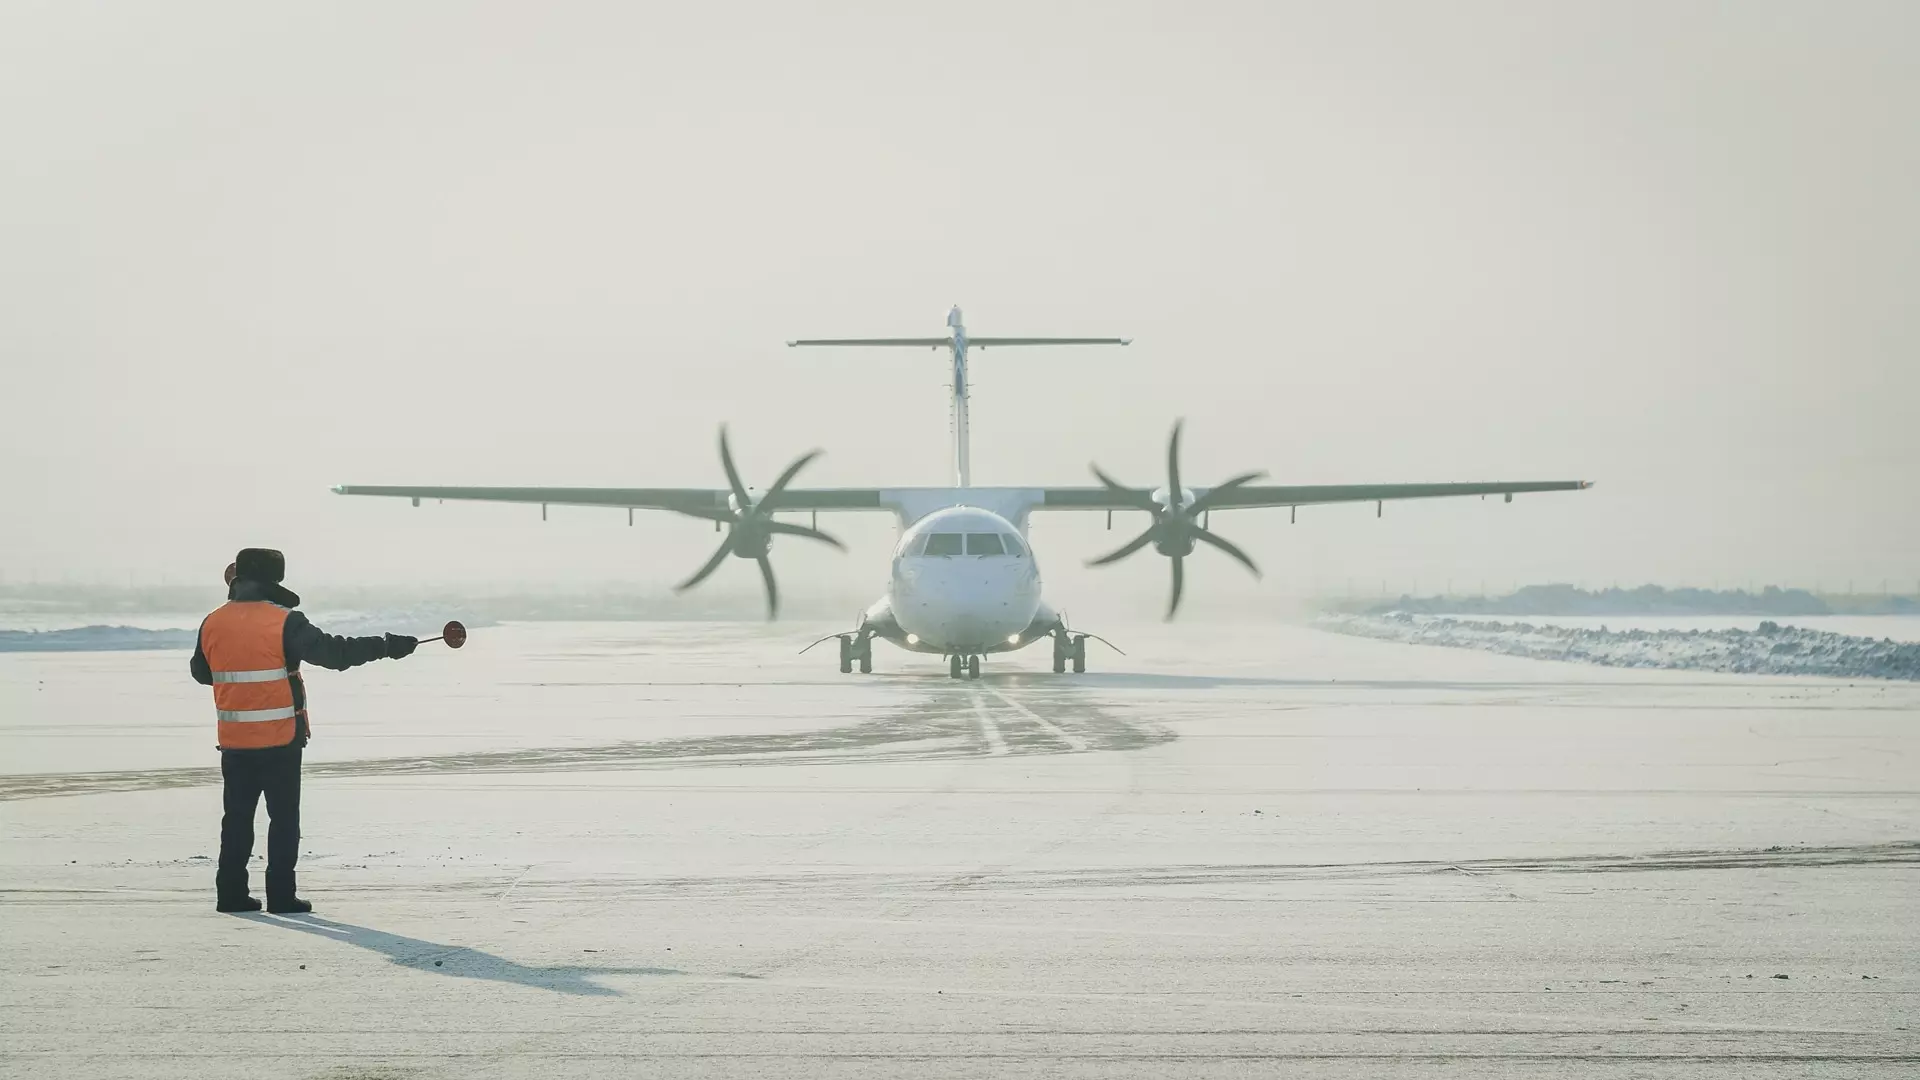 Пассажир пожаловался на авиакомпанию NordStar после взлета в ураган